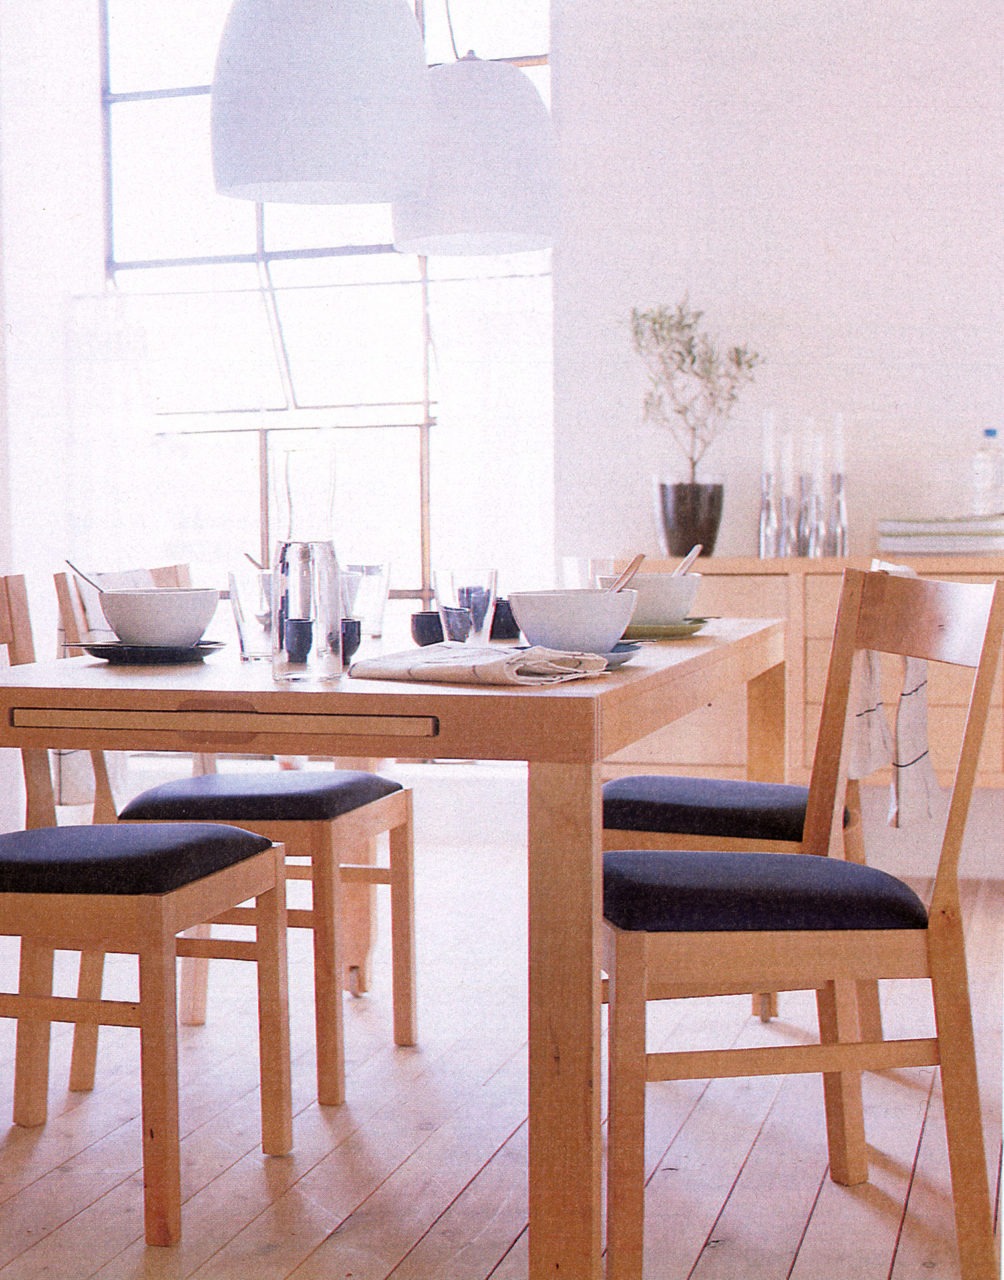 Cocina con muebles y suelo de madera clara. Alrededor de una mesa desplegable hay varias sillas de asiento oscuro.